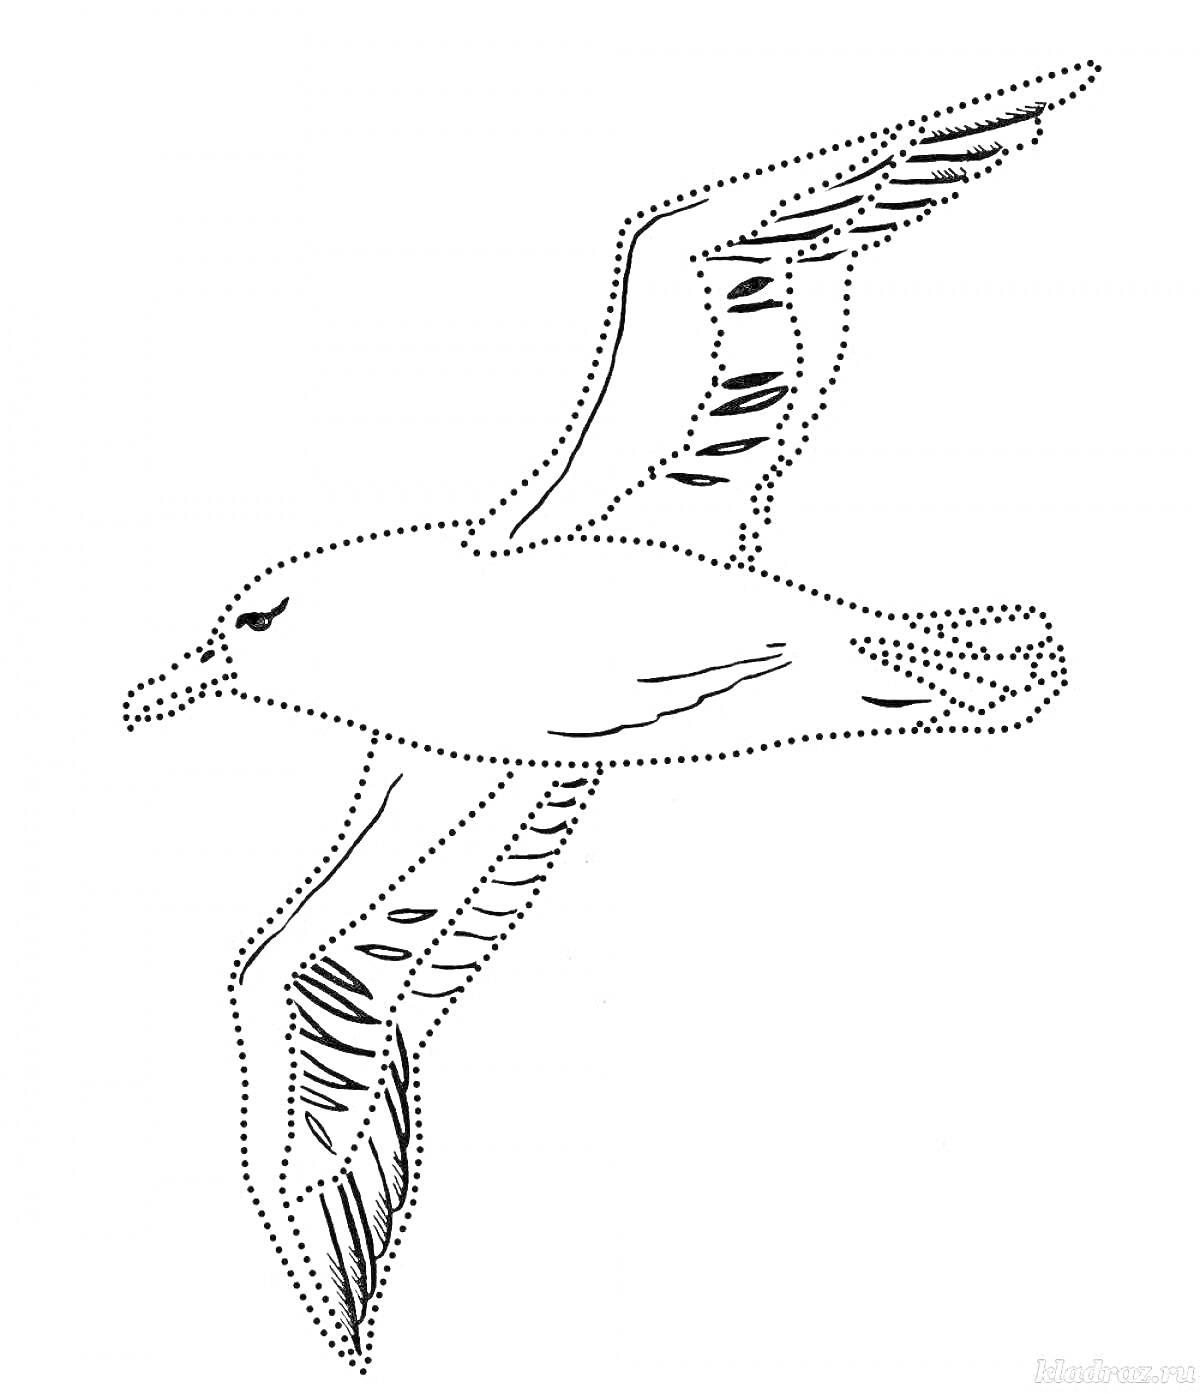 Летящий альбатрос, изображение контура птицы с деталями крыльев